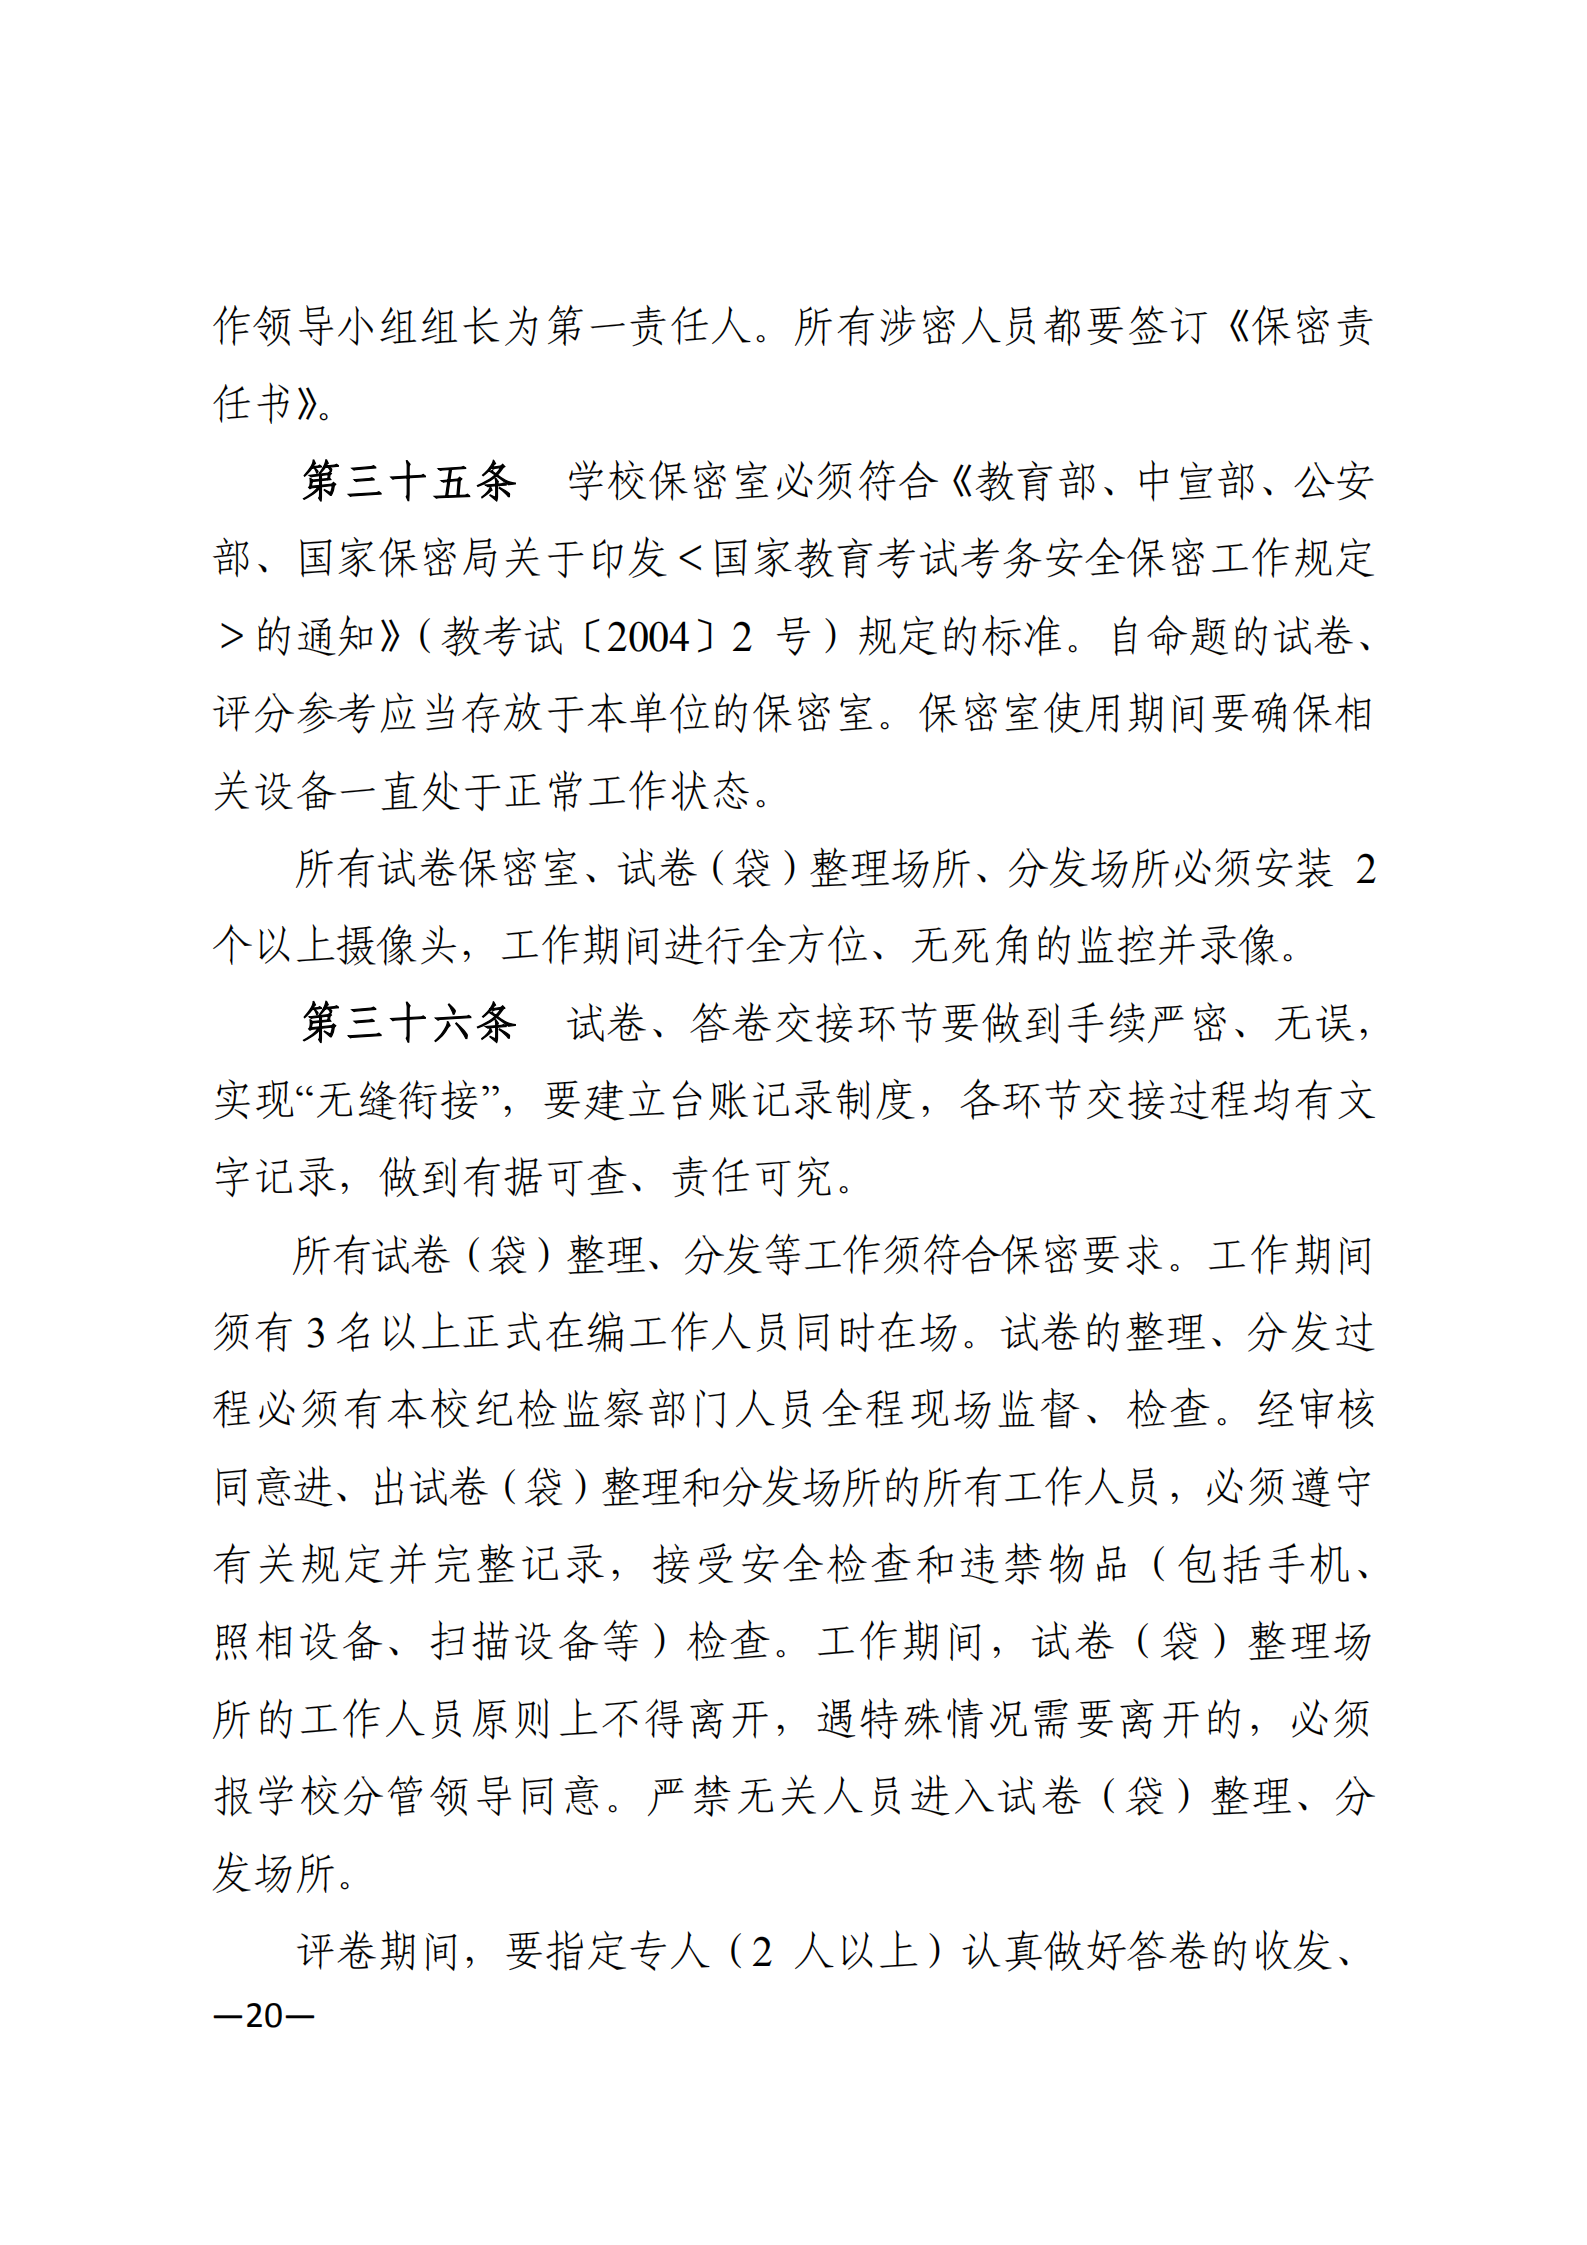 3_湘教发〔2021〕2号 关于印发《2021年湖南省普通高等教育“专升本”考试招生工作实施方案》的通知_19.png